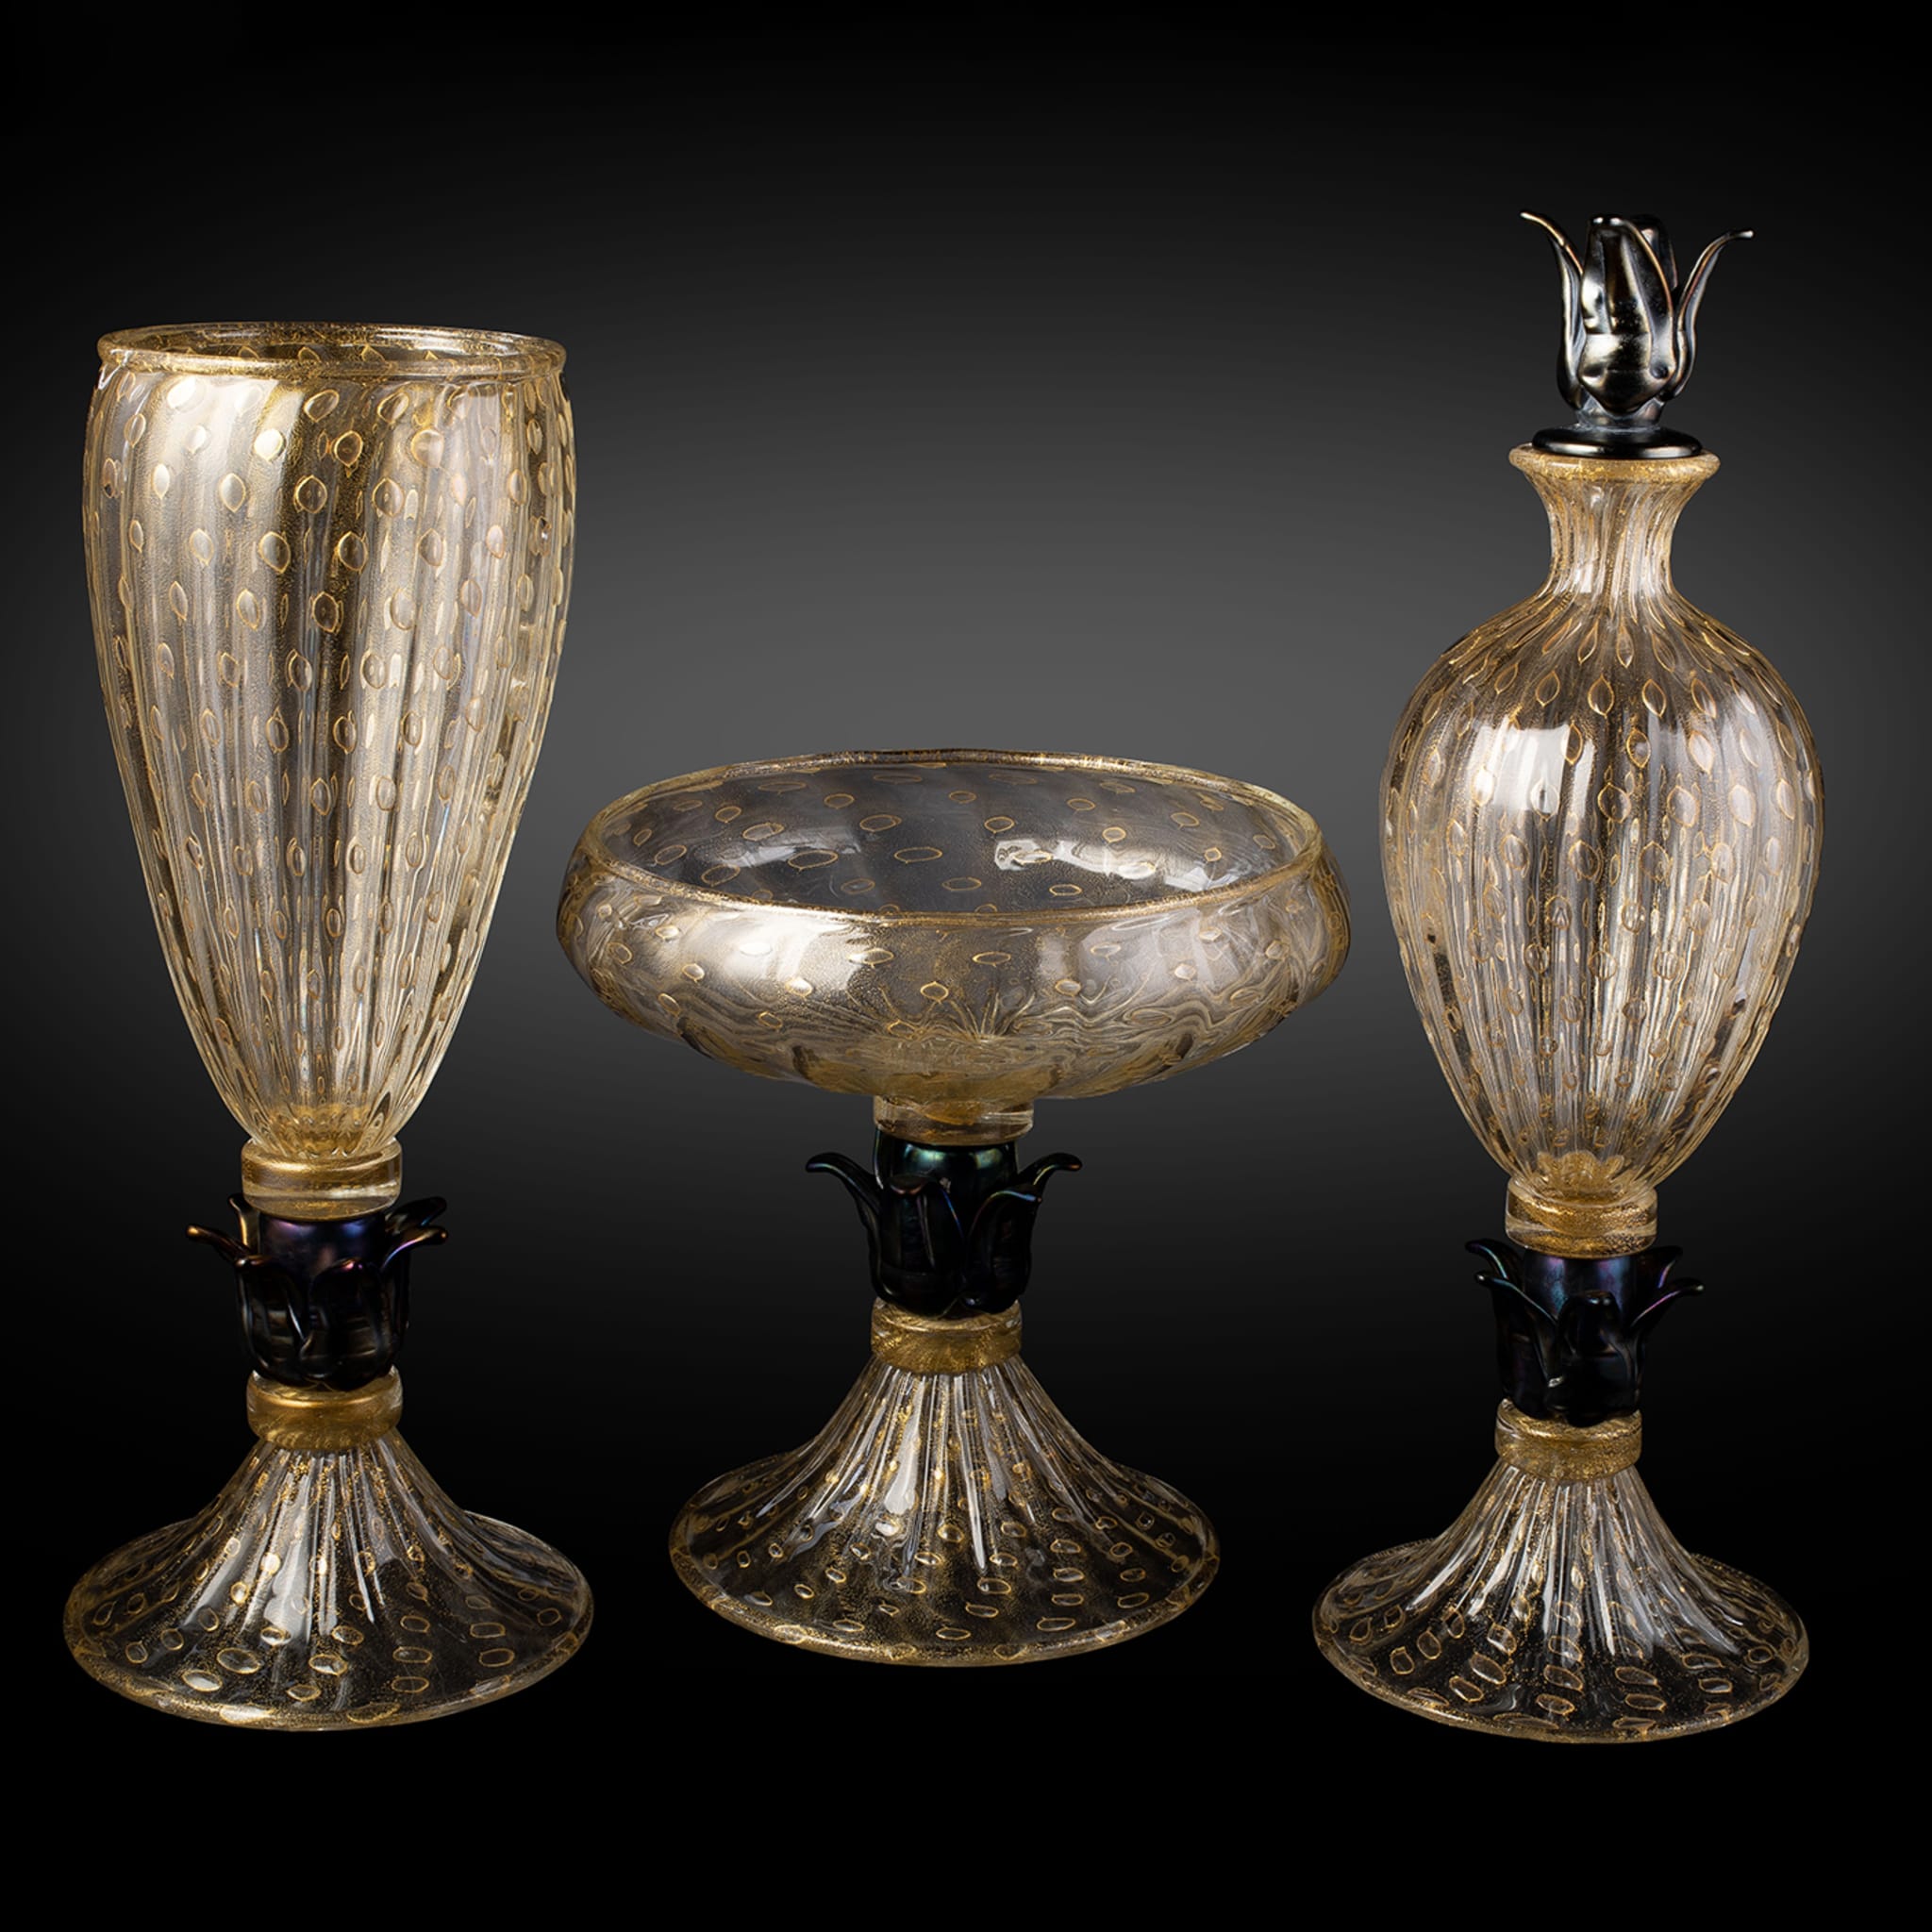 24K Golden & Black Footed Vase - Alternative view 2